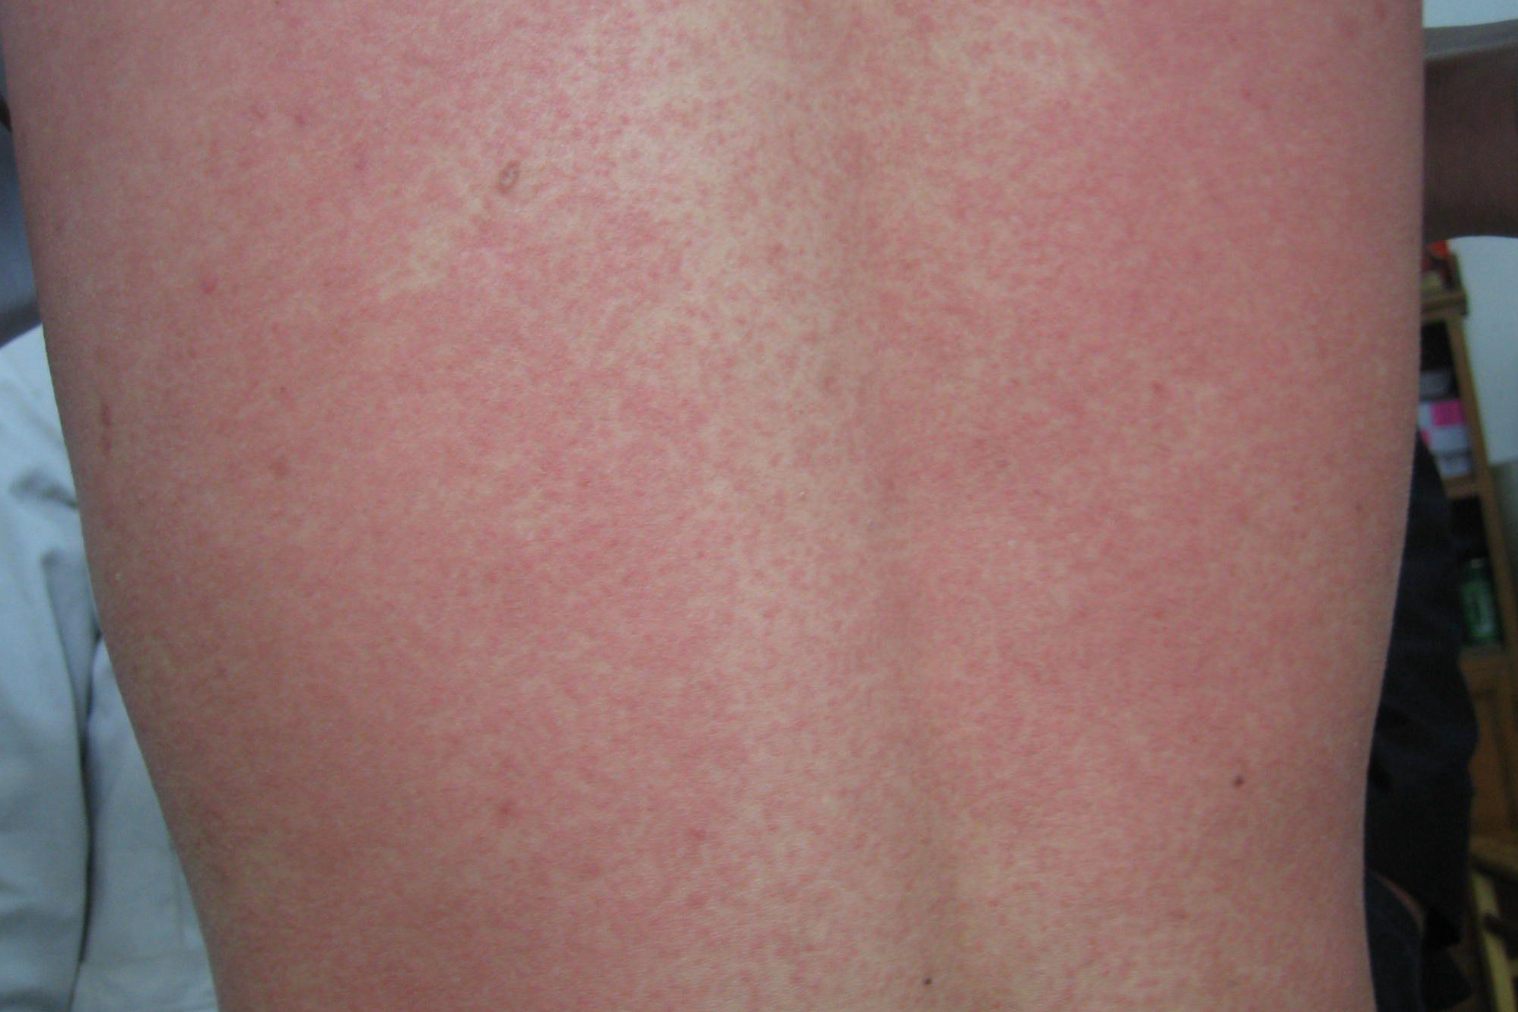 局部皮肤瘙痒等症状,常发生于皮肤的暴露位置,常因皮肤直接接触过敏